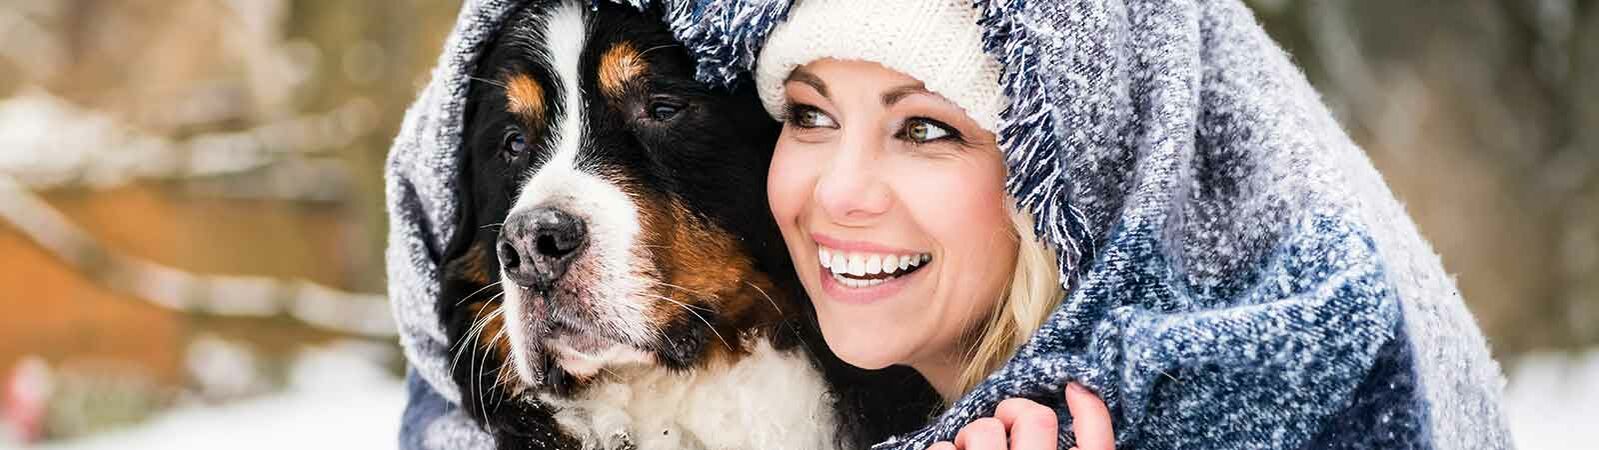 Ein Hund und eine Frau mit Mütze sitzen gemeinsam unter einer Wolldecke im Schnee.